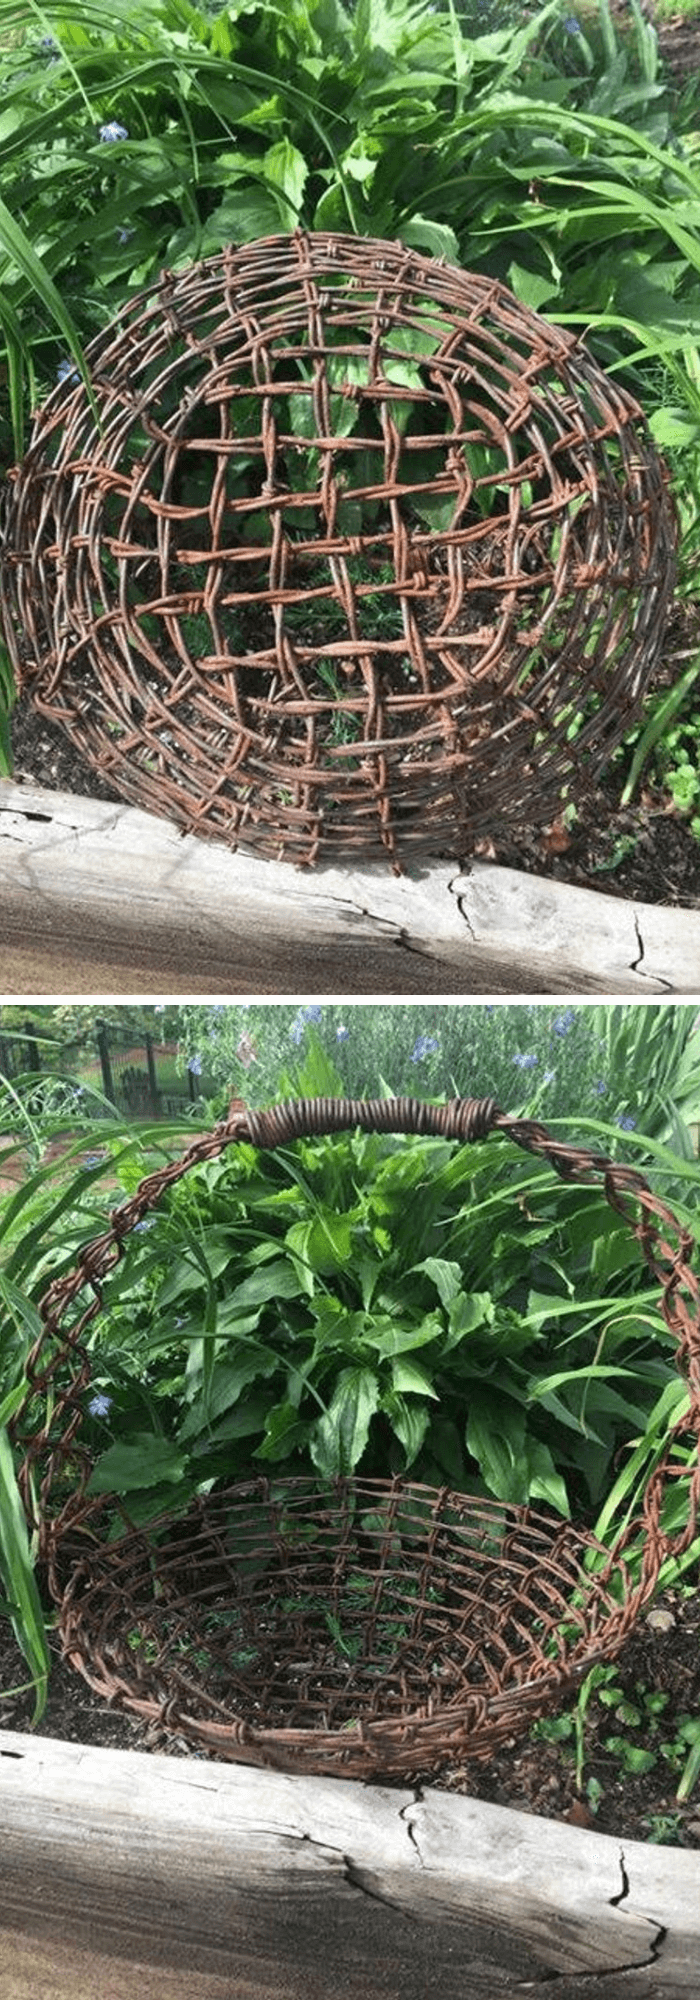 Rusty Metal garden DIY Ideas Rusty Barbed wire